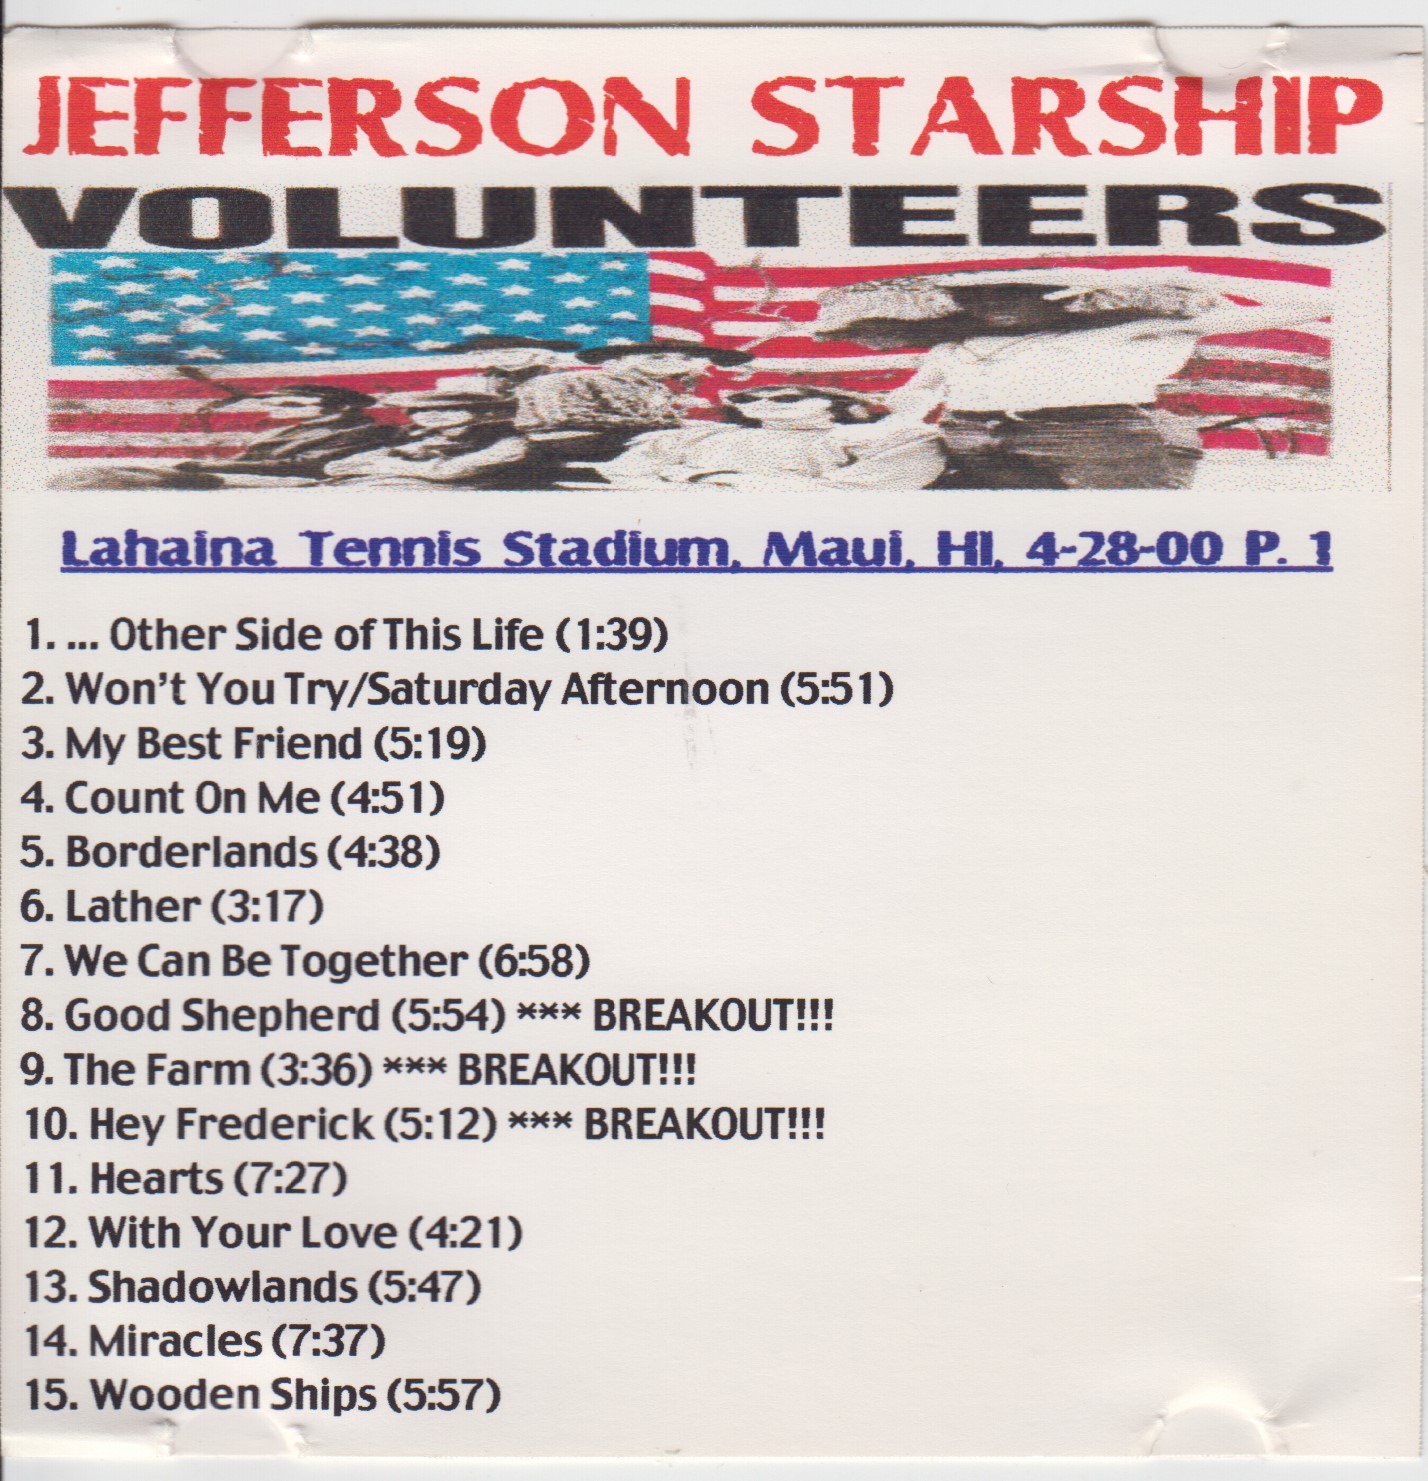 JeffersonStarship2000-04-28RoyalLahainaTennisStadiumHI (2).jpg